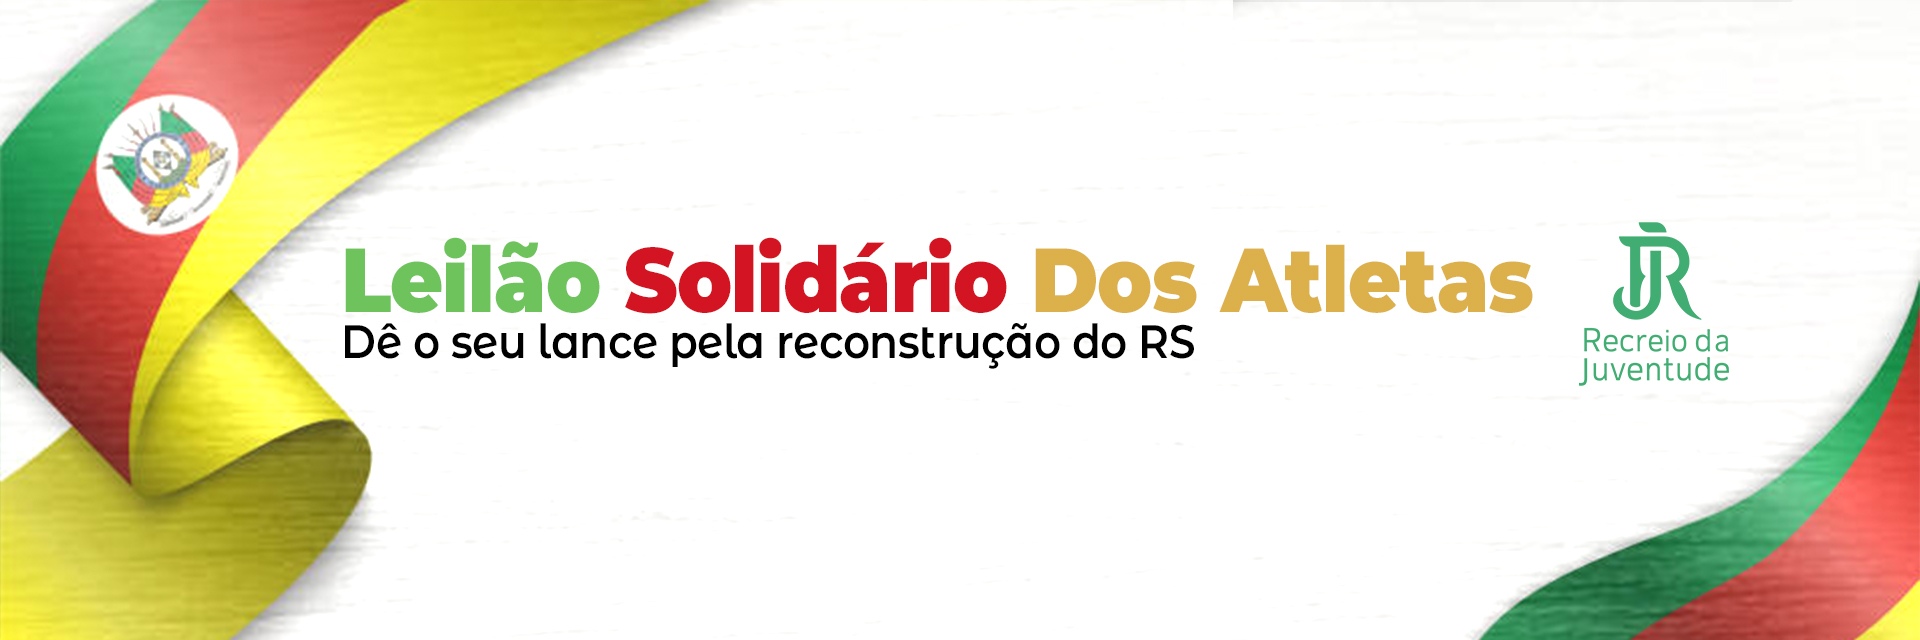 Clube Recreio da Juventude/RS realiza leilão solidário em prol da reconstrução do Rio Grande do Sul